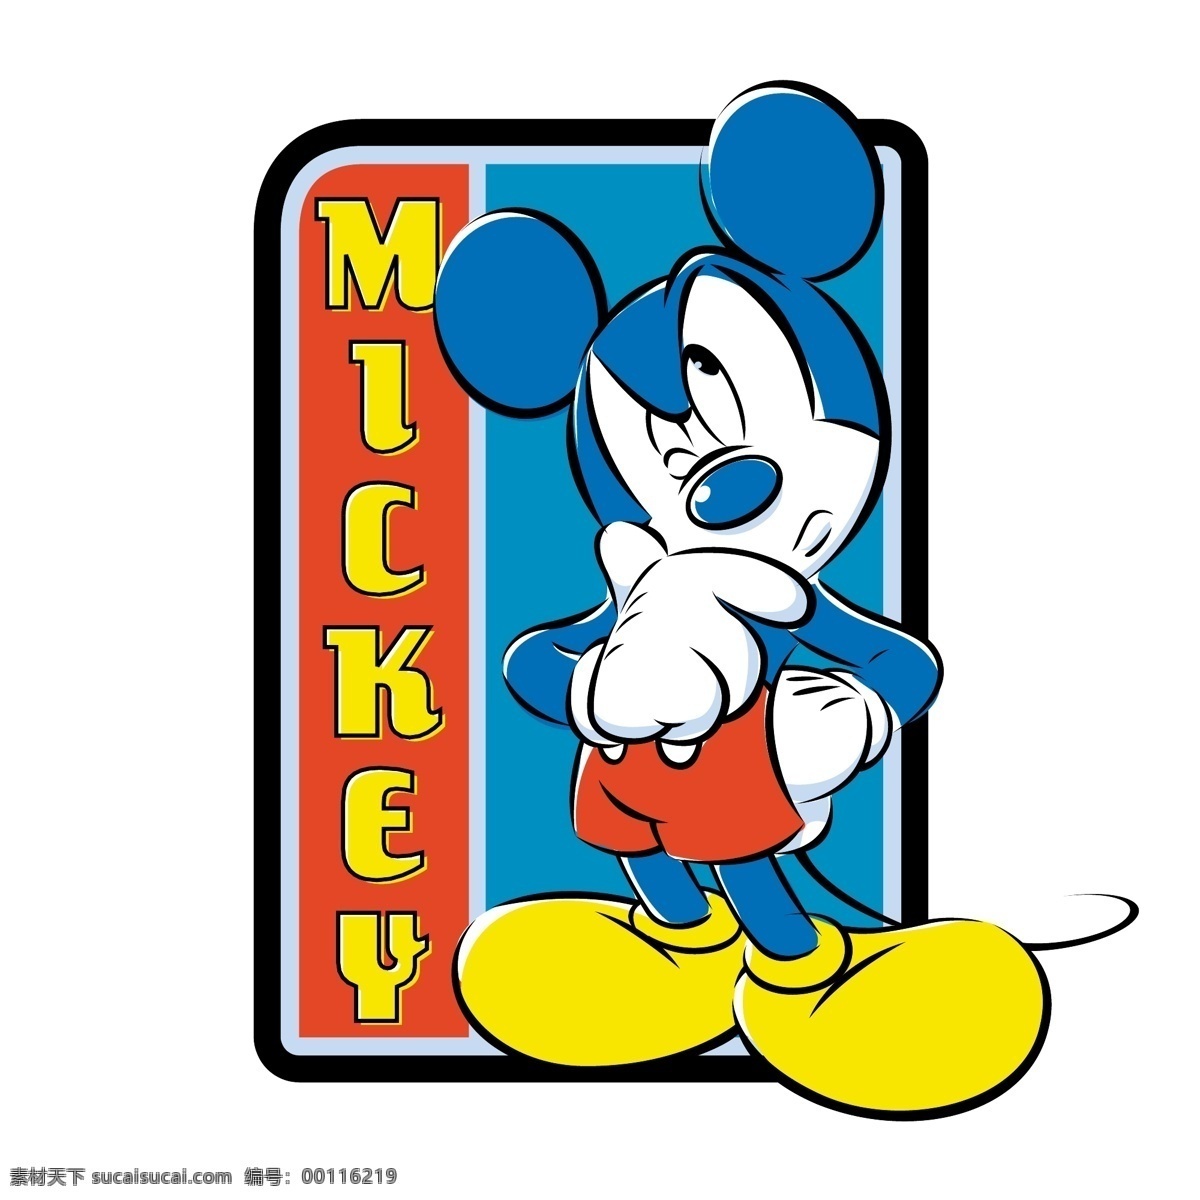 米奇 老鼠 免费 标志 标识 psd源文件 logo设计